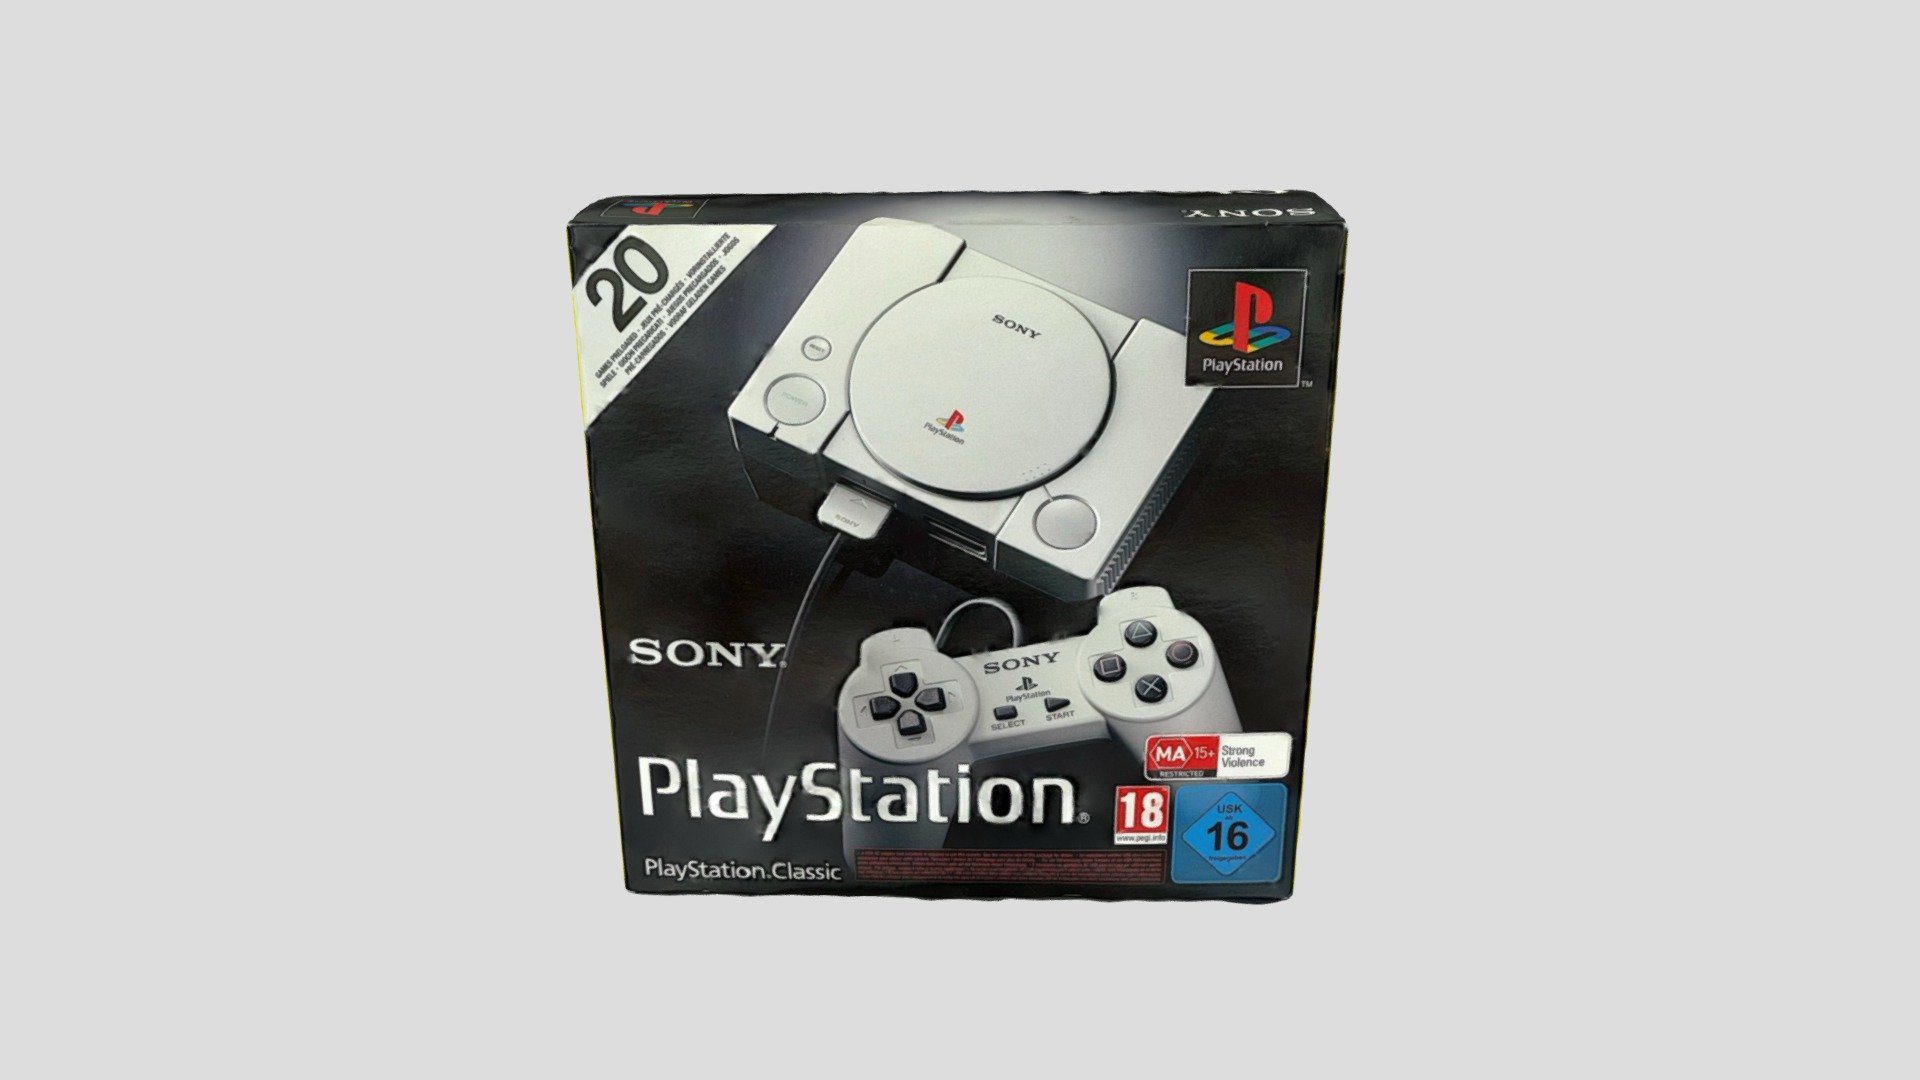 PlayStation Classic Box - PlayStation Classic Box - Download Free 3D model by DinkaDanka 3d model